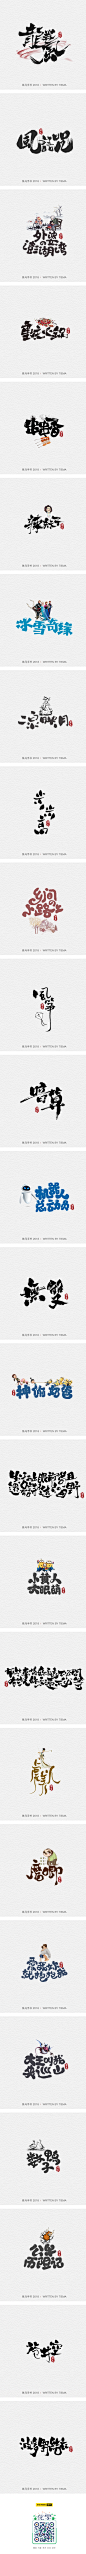 09.11-09.12手书精选-字体传奇网-中国首个字体品牌设计师交流网